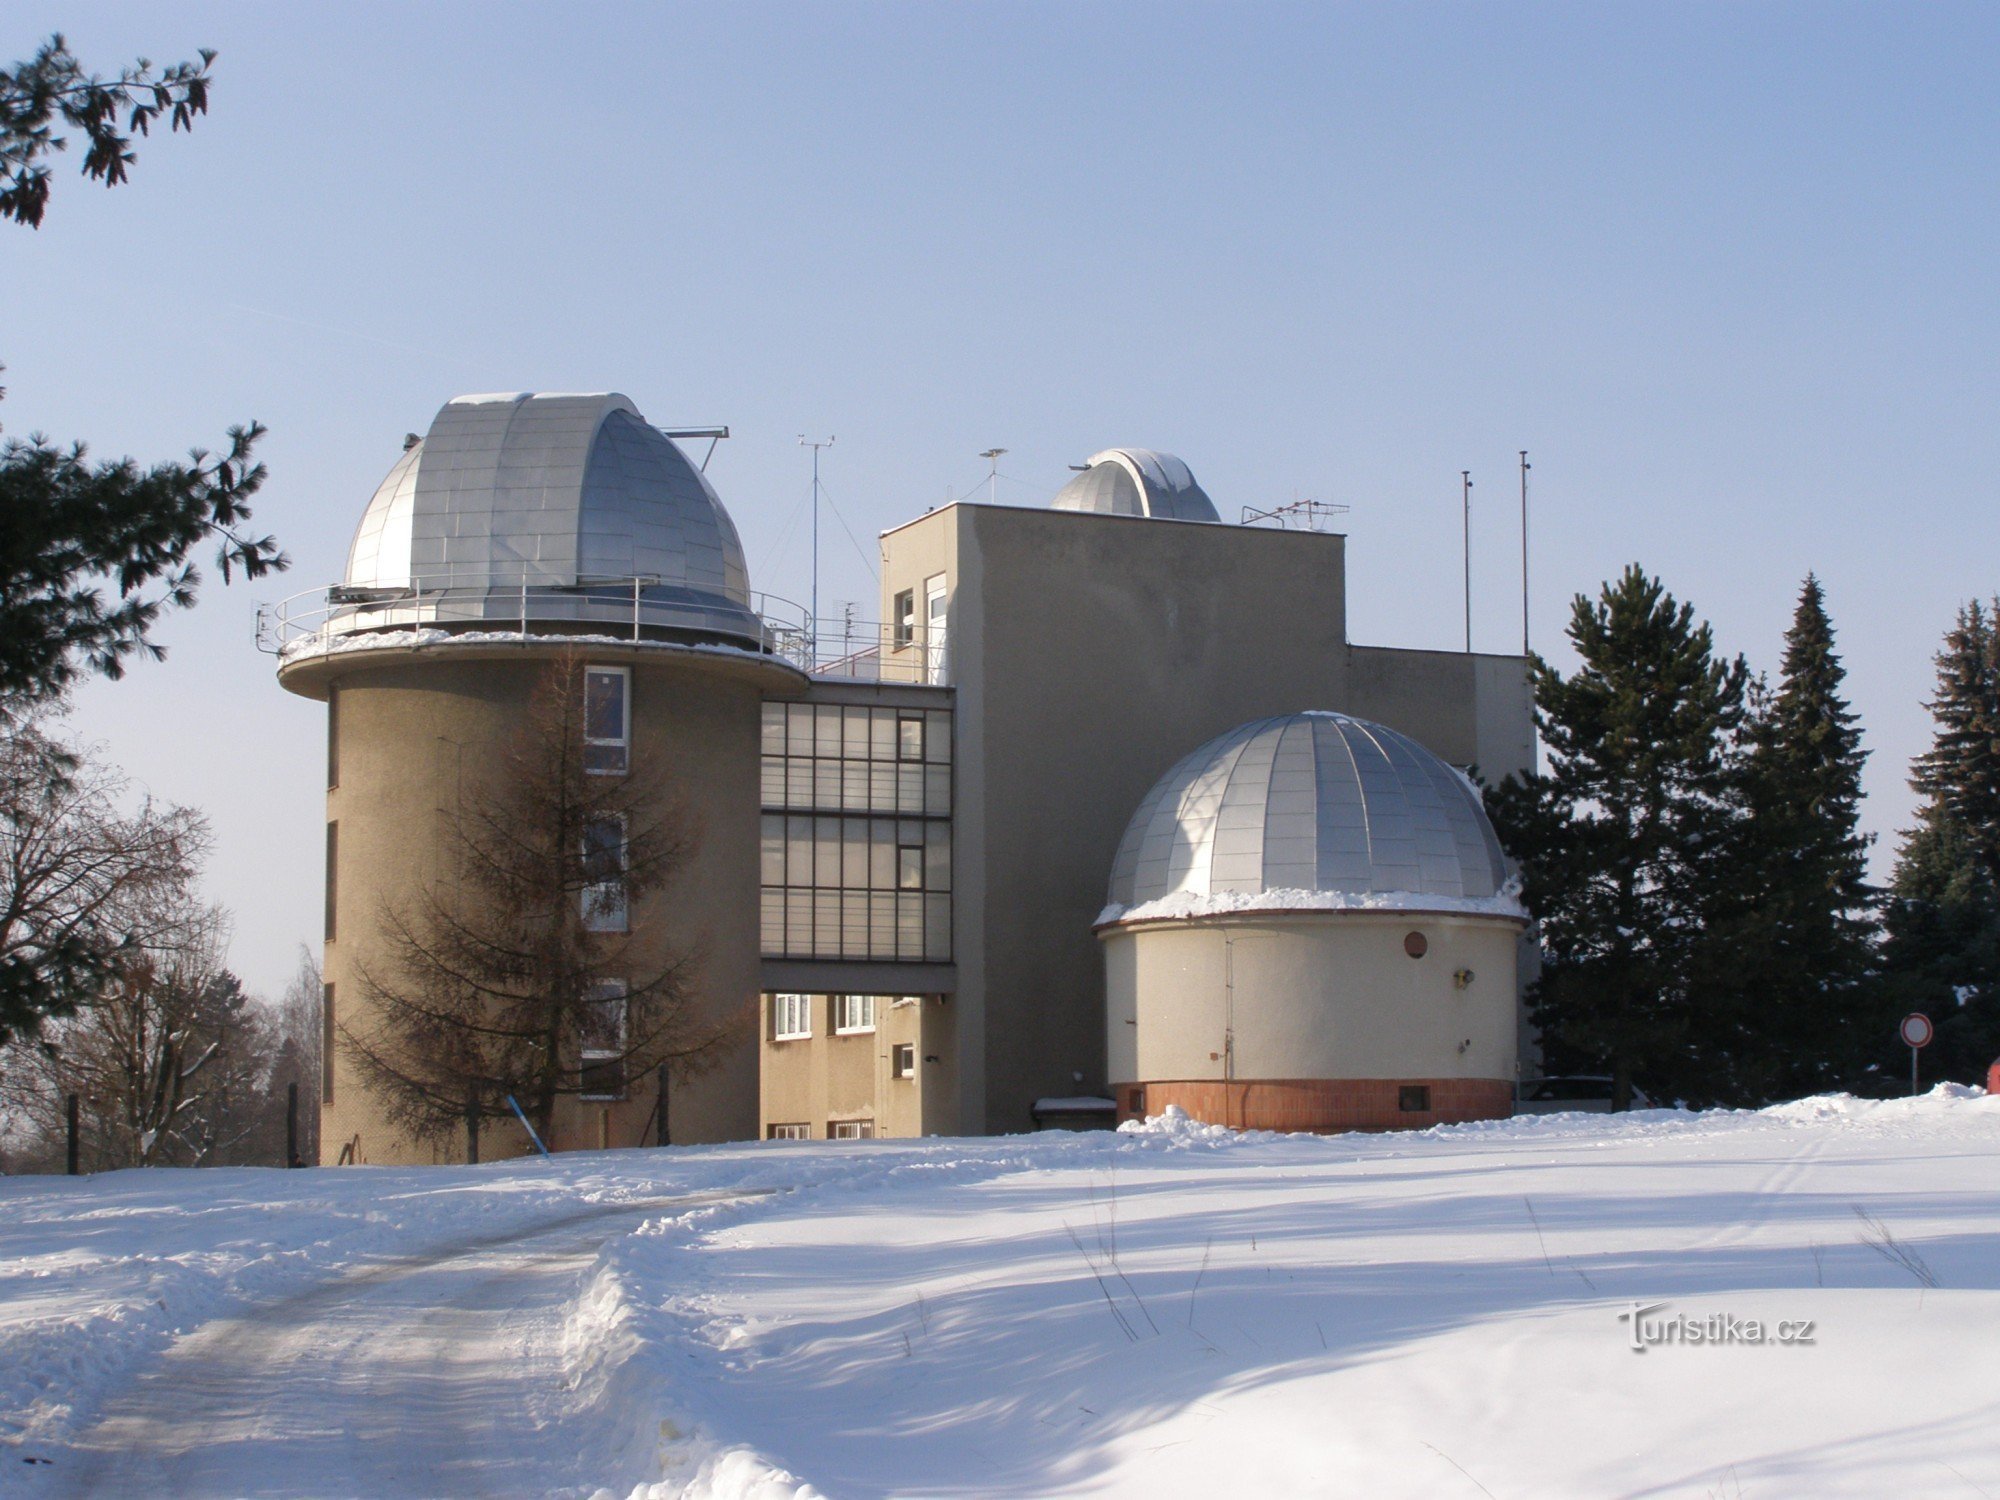 Hradec Králové - observator și planetariu